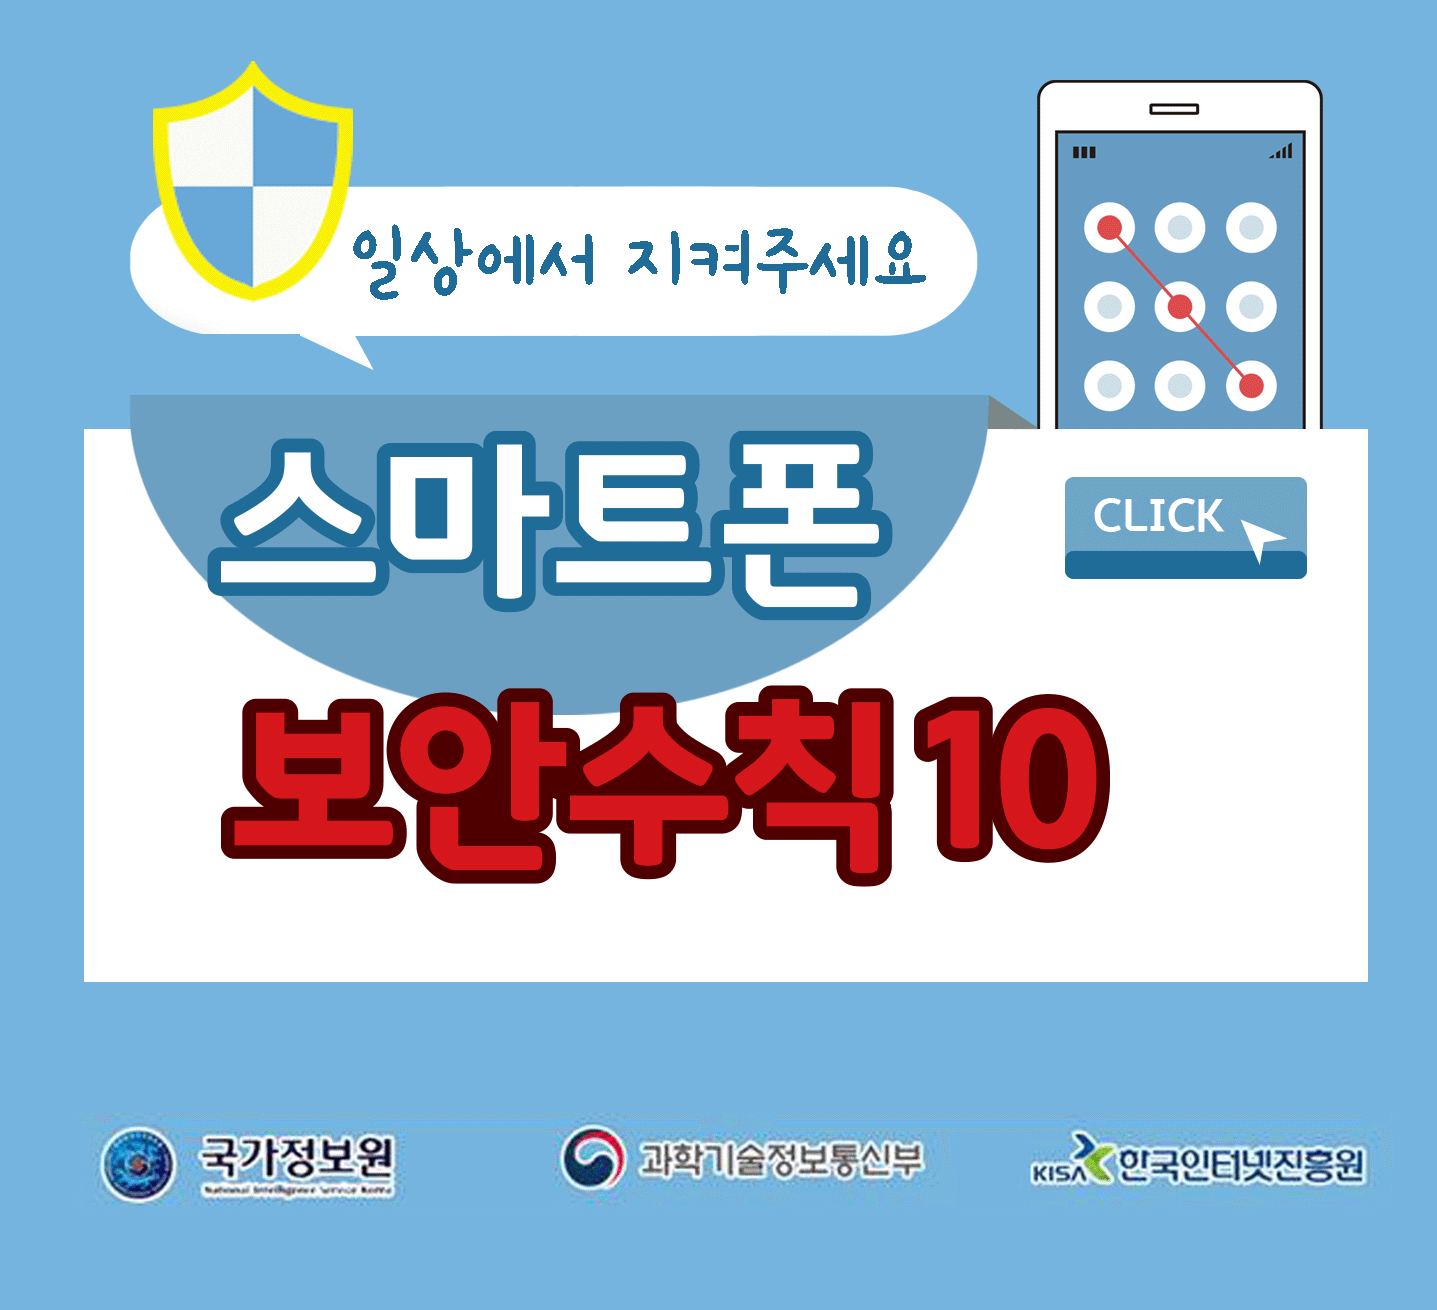 일상에서 지켜주세요
스마트폰 보안수칙 10 CLICK
국가정보원, 과학기술정보통신부, 한국인터넷진흥원;jsessionid=B5869C46489AFA9F2C5A1BC5BA24E267